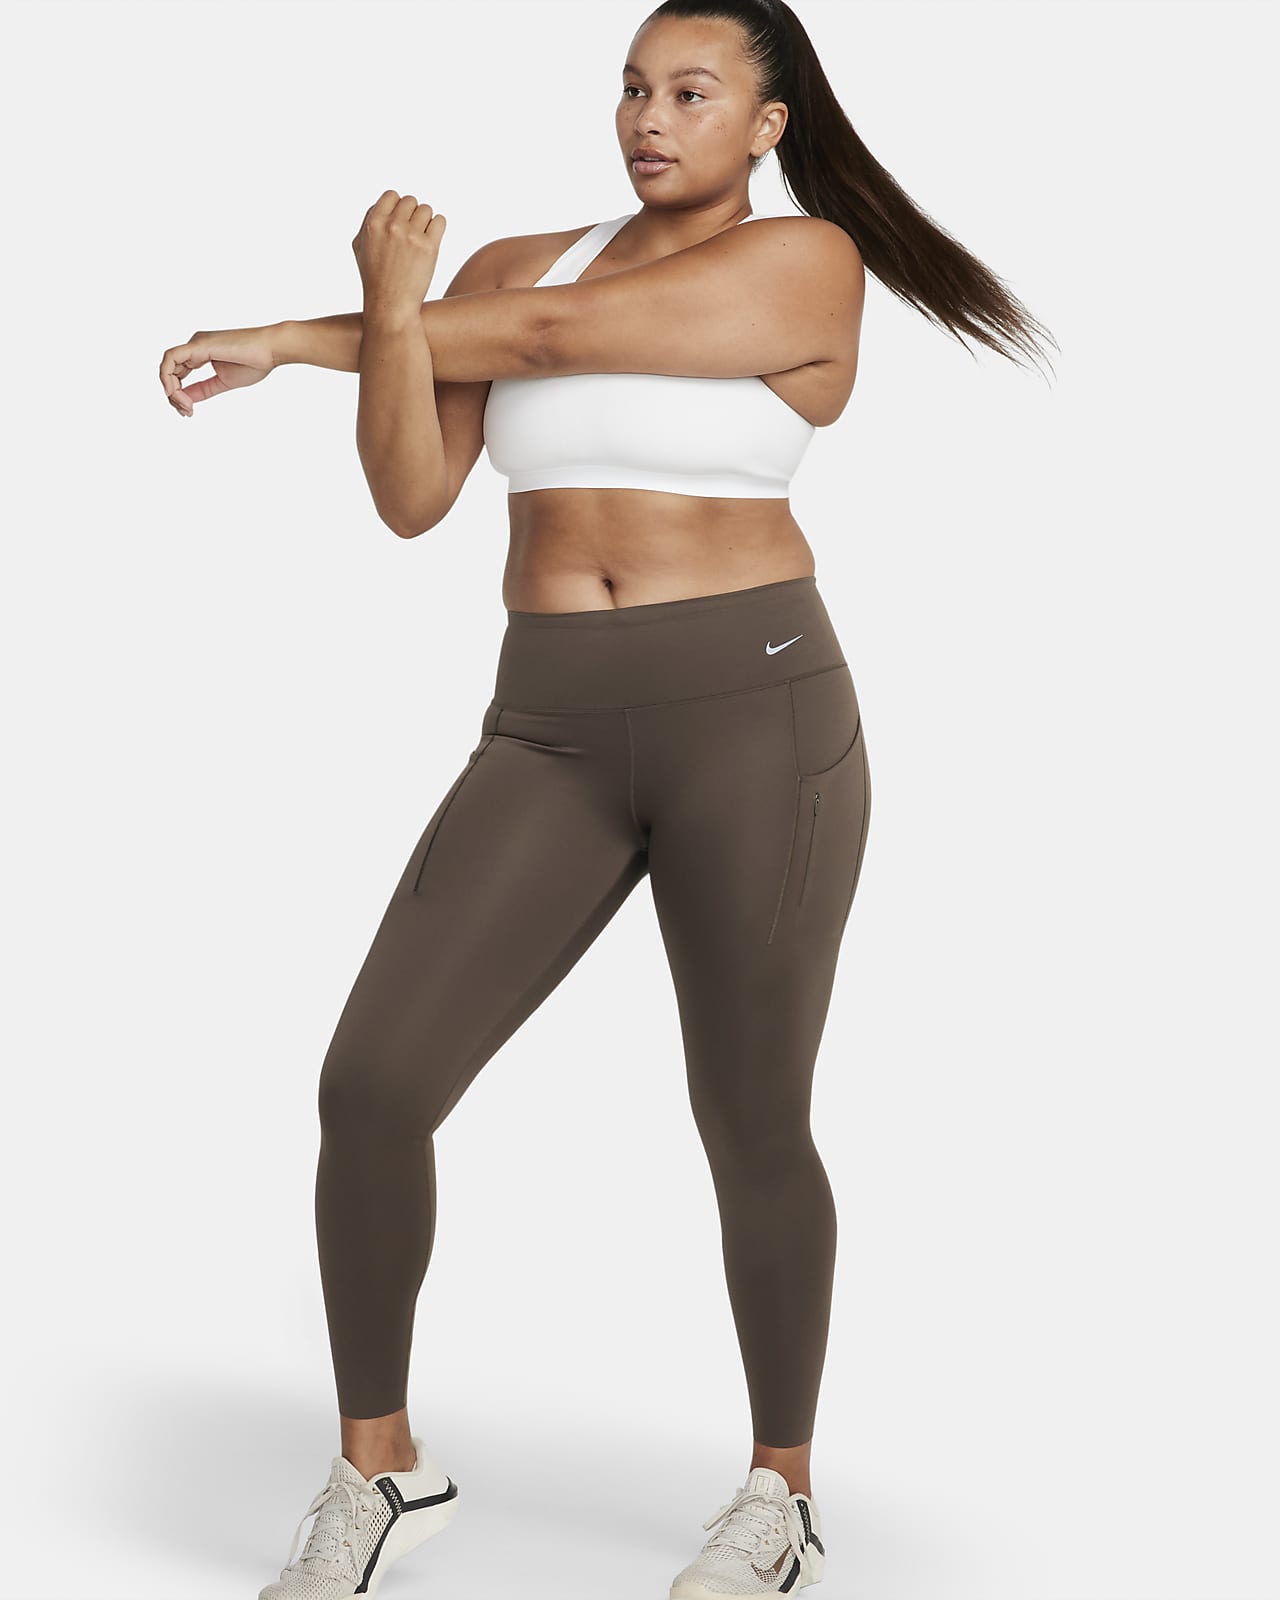 Nike Go Leggings in voller Länge mit starkem Halt, mittelhohem Bund und Taschen für Damen